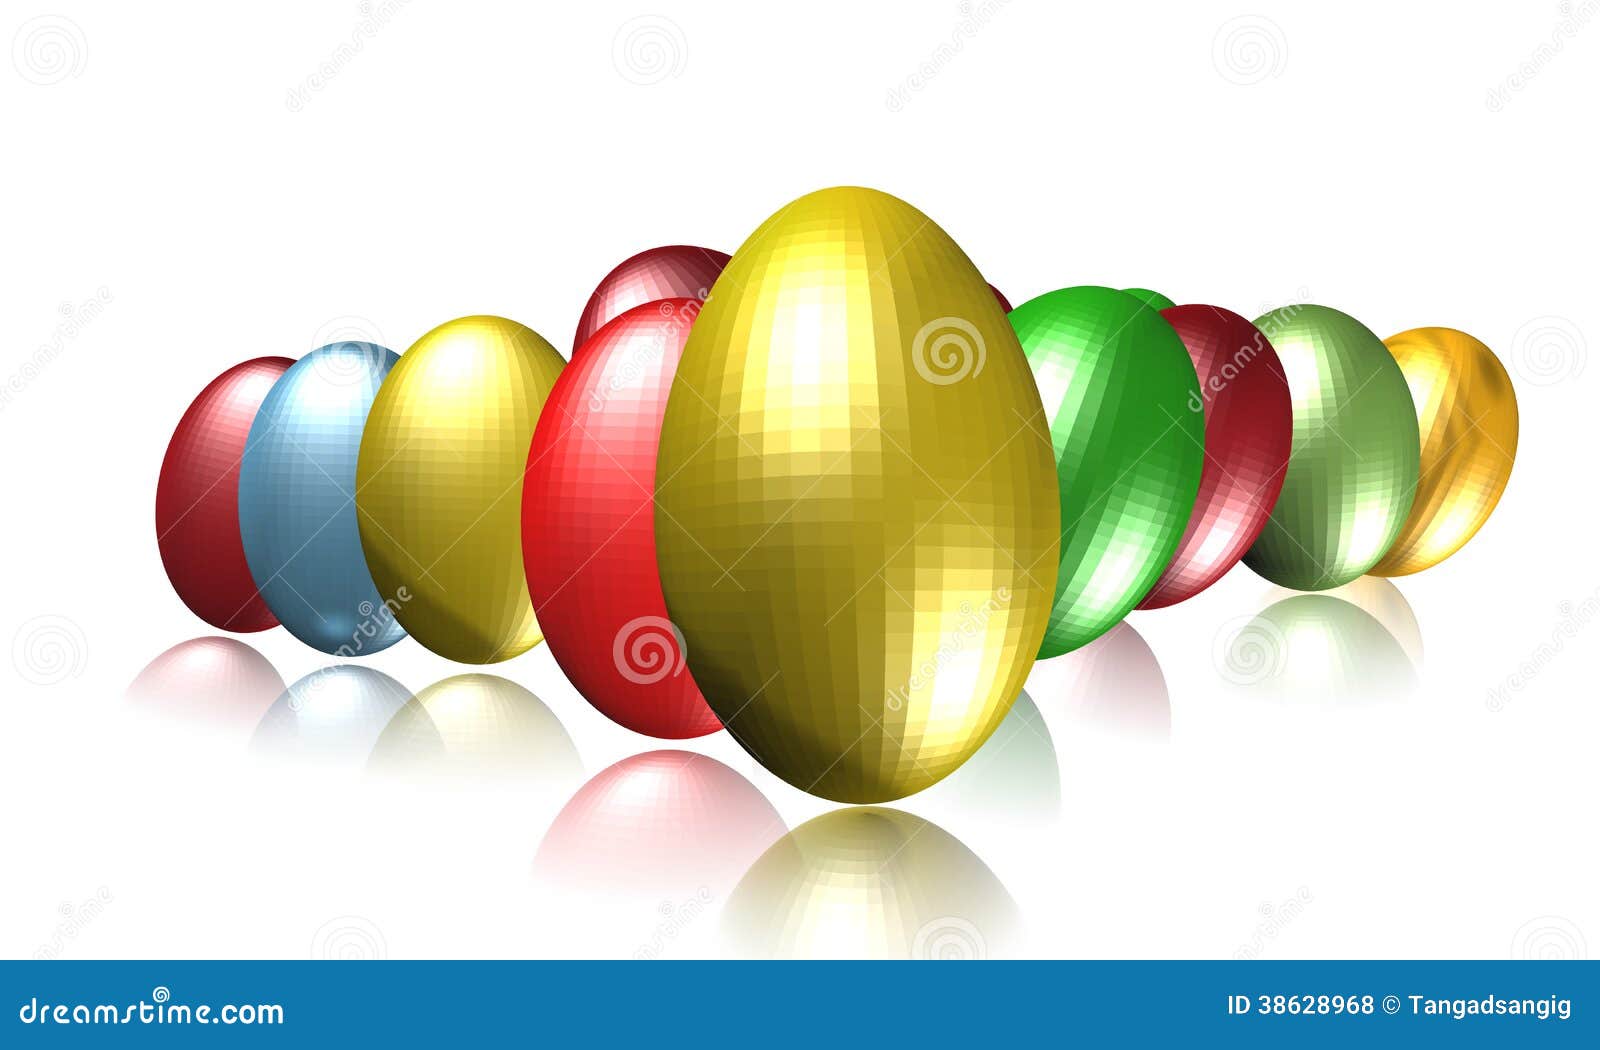 Metallic Eggs stock illustration. Illustration of accrue - 38628968